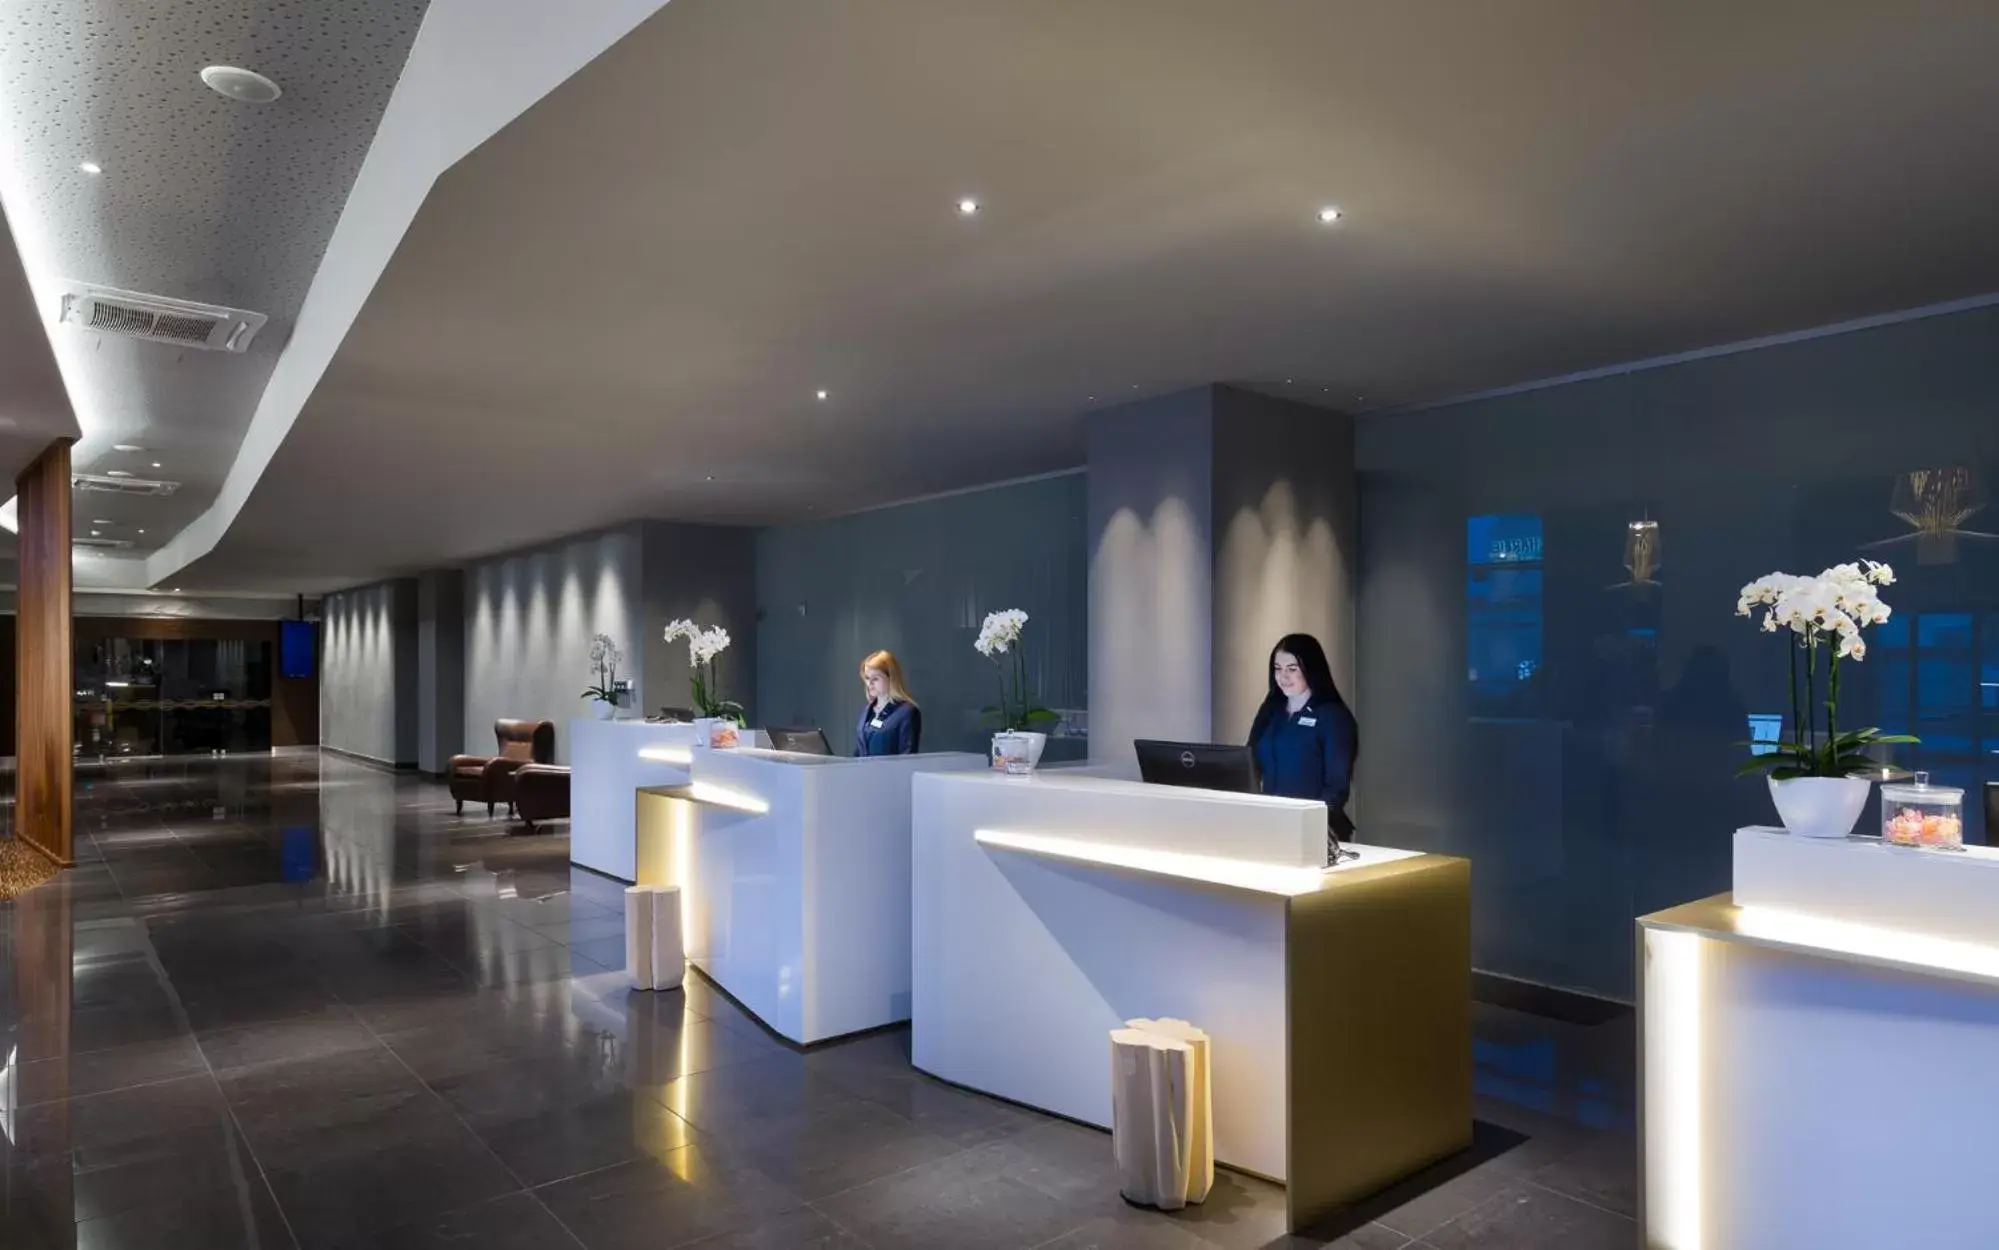 Lobby or reception, Lobby/Reception in Radisson Blu Hotel Lietuva